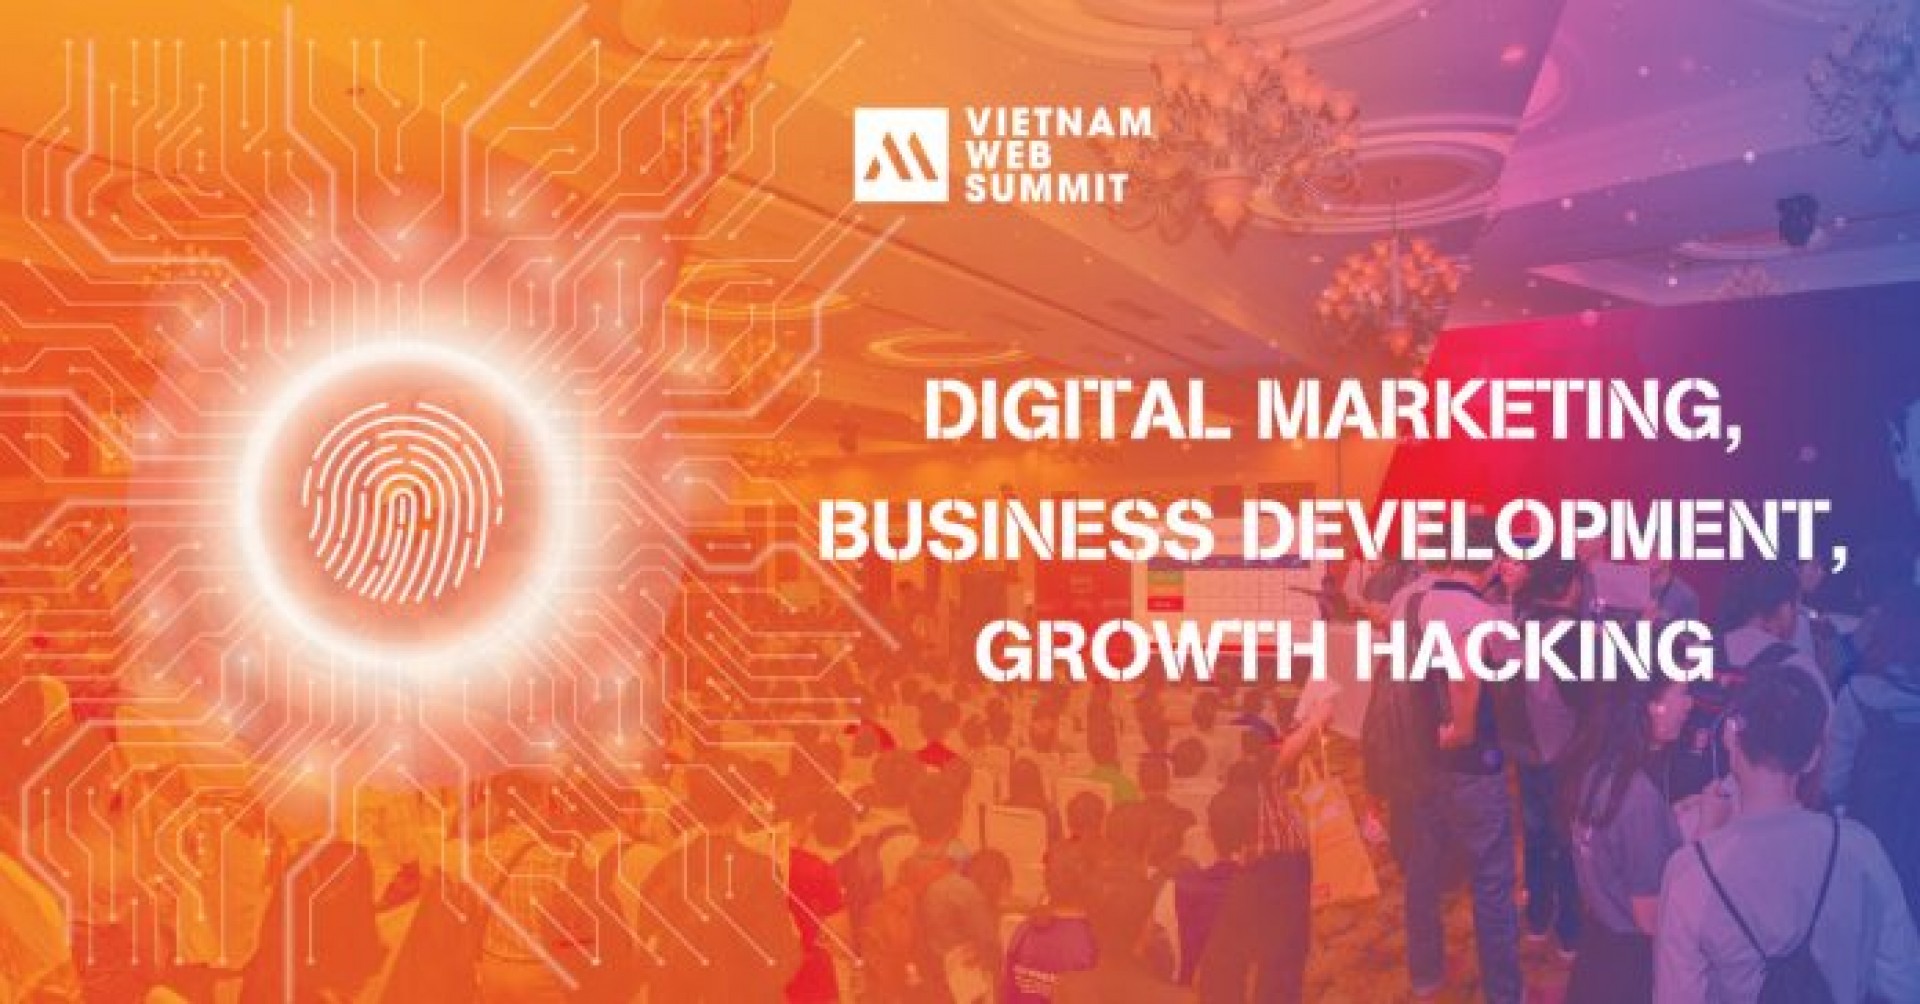 Điểm danh các “cao thủ” digital marketing tại Vietnam Web Summit 2018